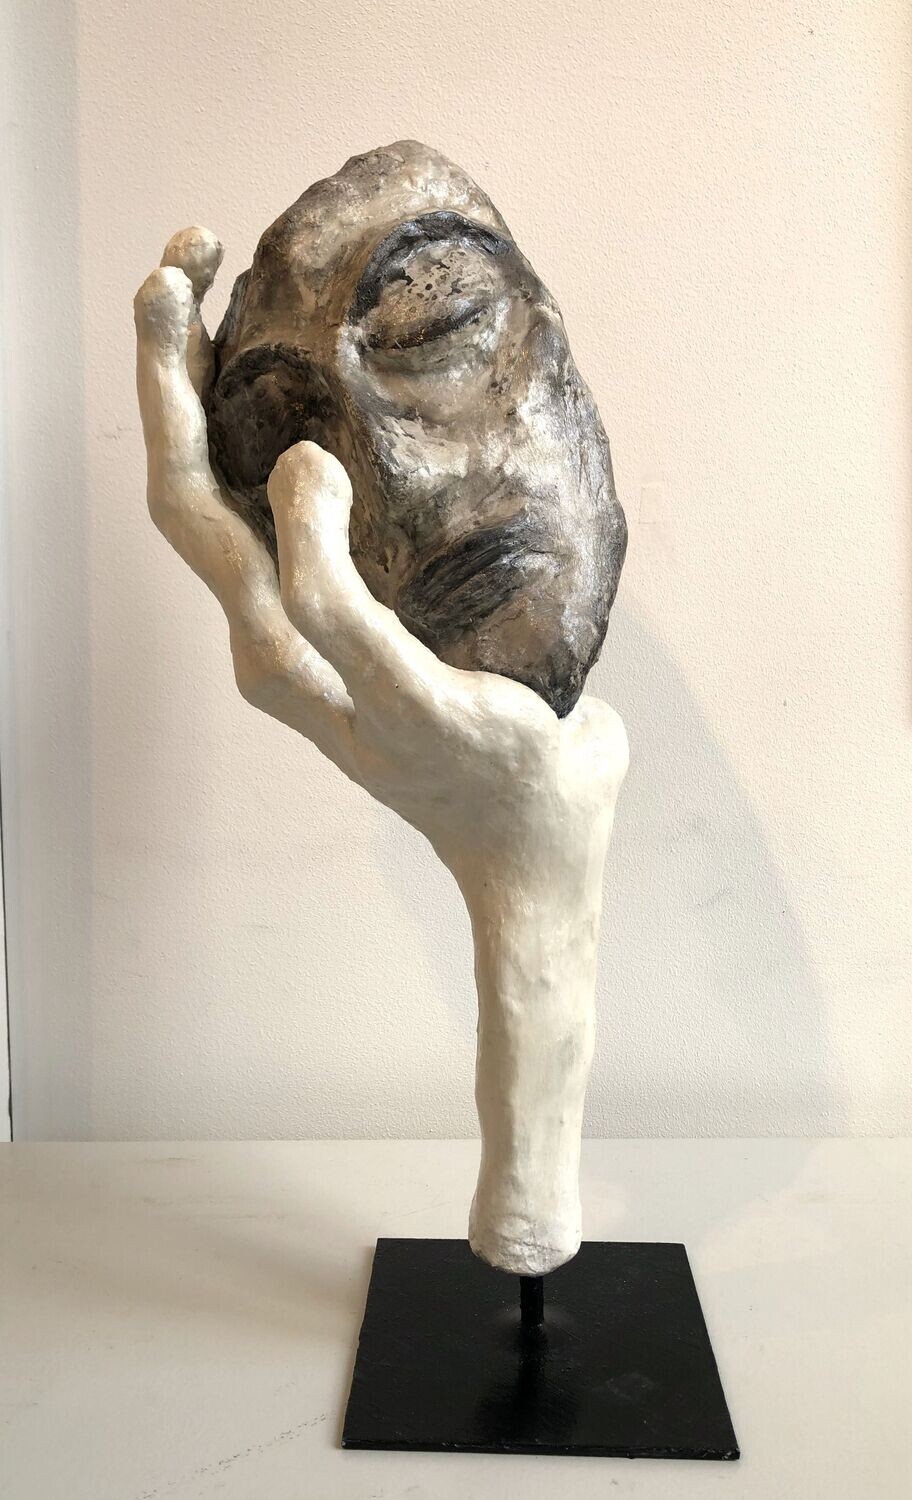 "Le silence".
Sculpture de env. 50cm de haut.
Amalgame divers et résines, pigment naturels sur support métal.
Artiste "Ignara".